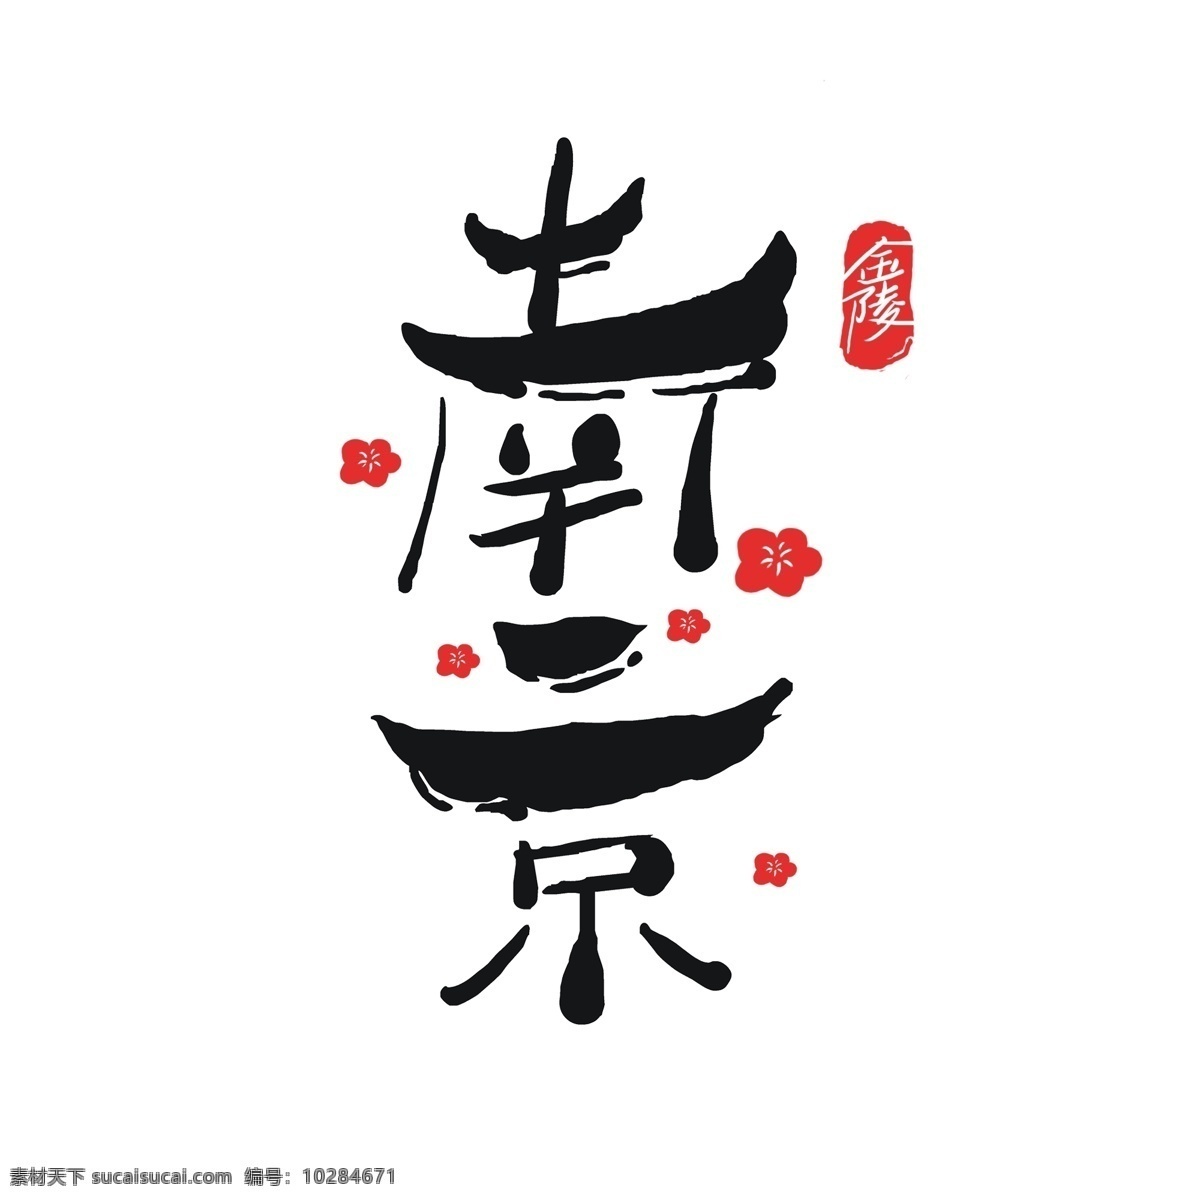 原创 中国 风 南京 艺术 字 字体 江南 建筑 中国风 体设计 城楼 创意字体 南京艺术字 南京logo